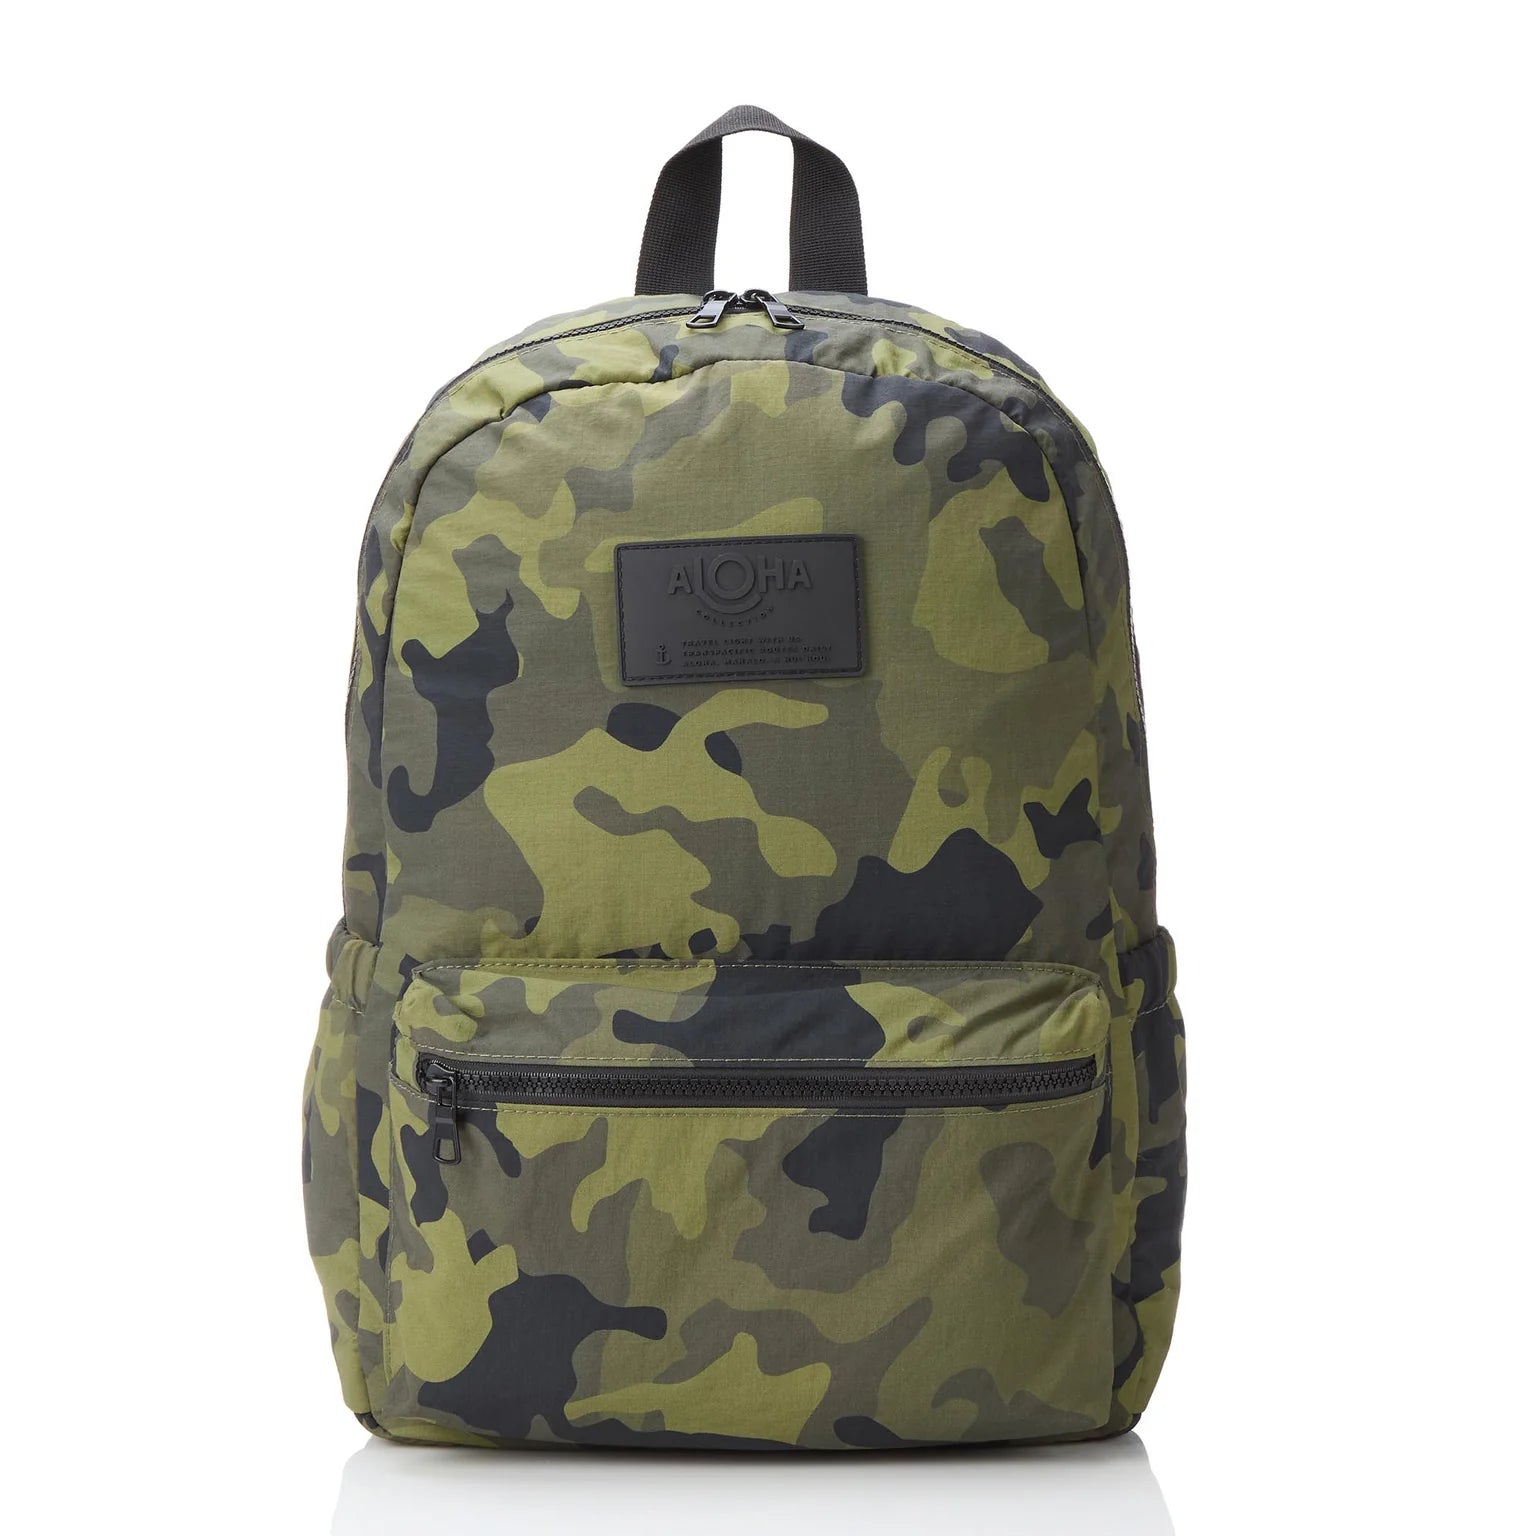 Go-Light Backpack / Camo Hunter on Olive